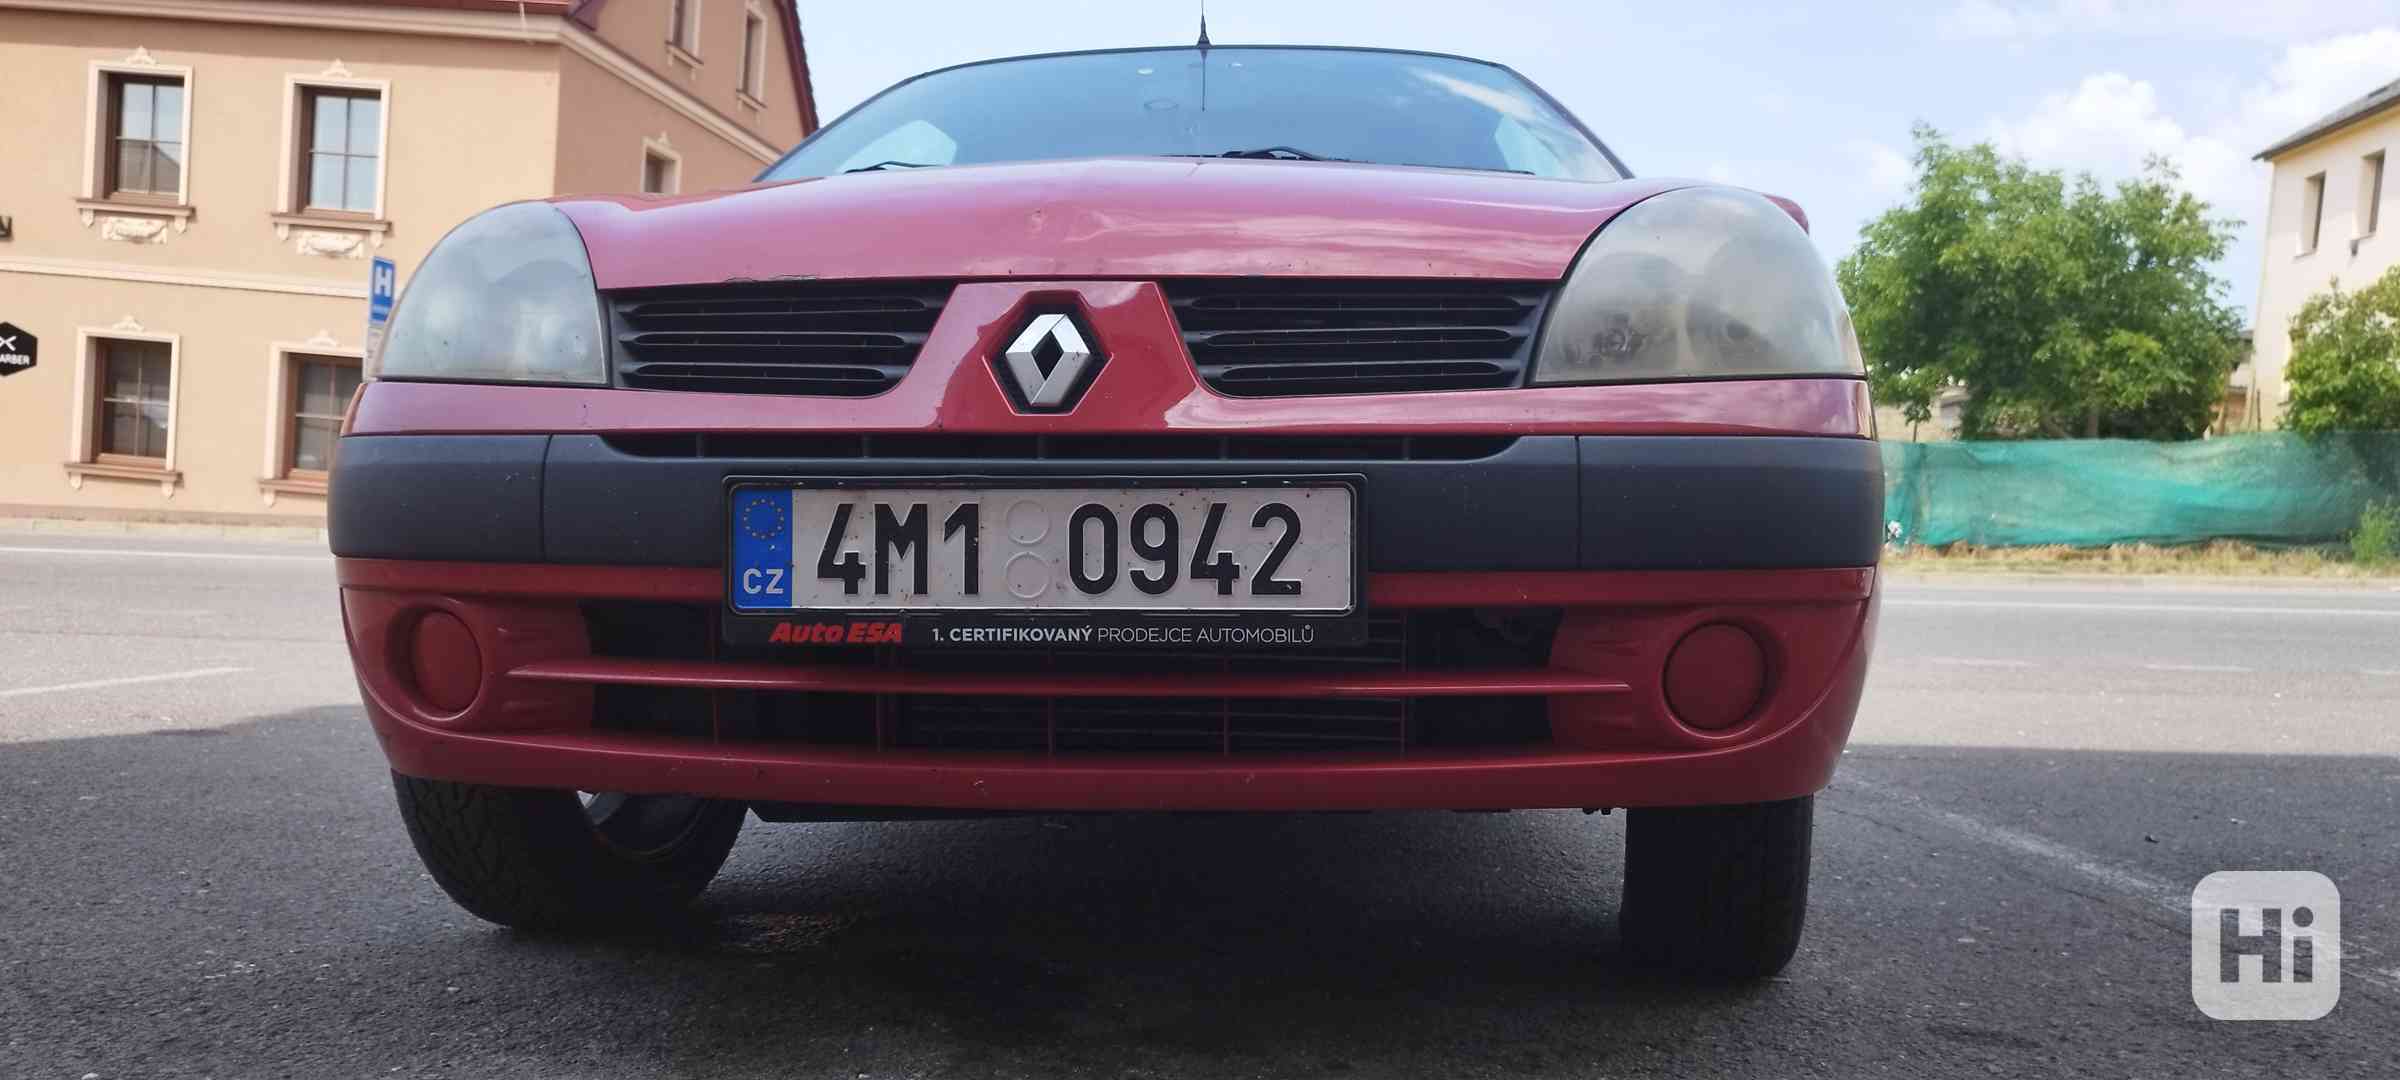 Renault thalia 1.4 55KW - foto 1